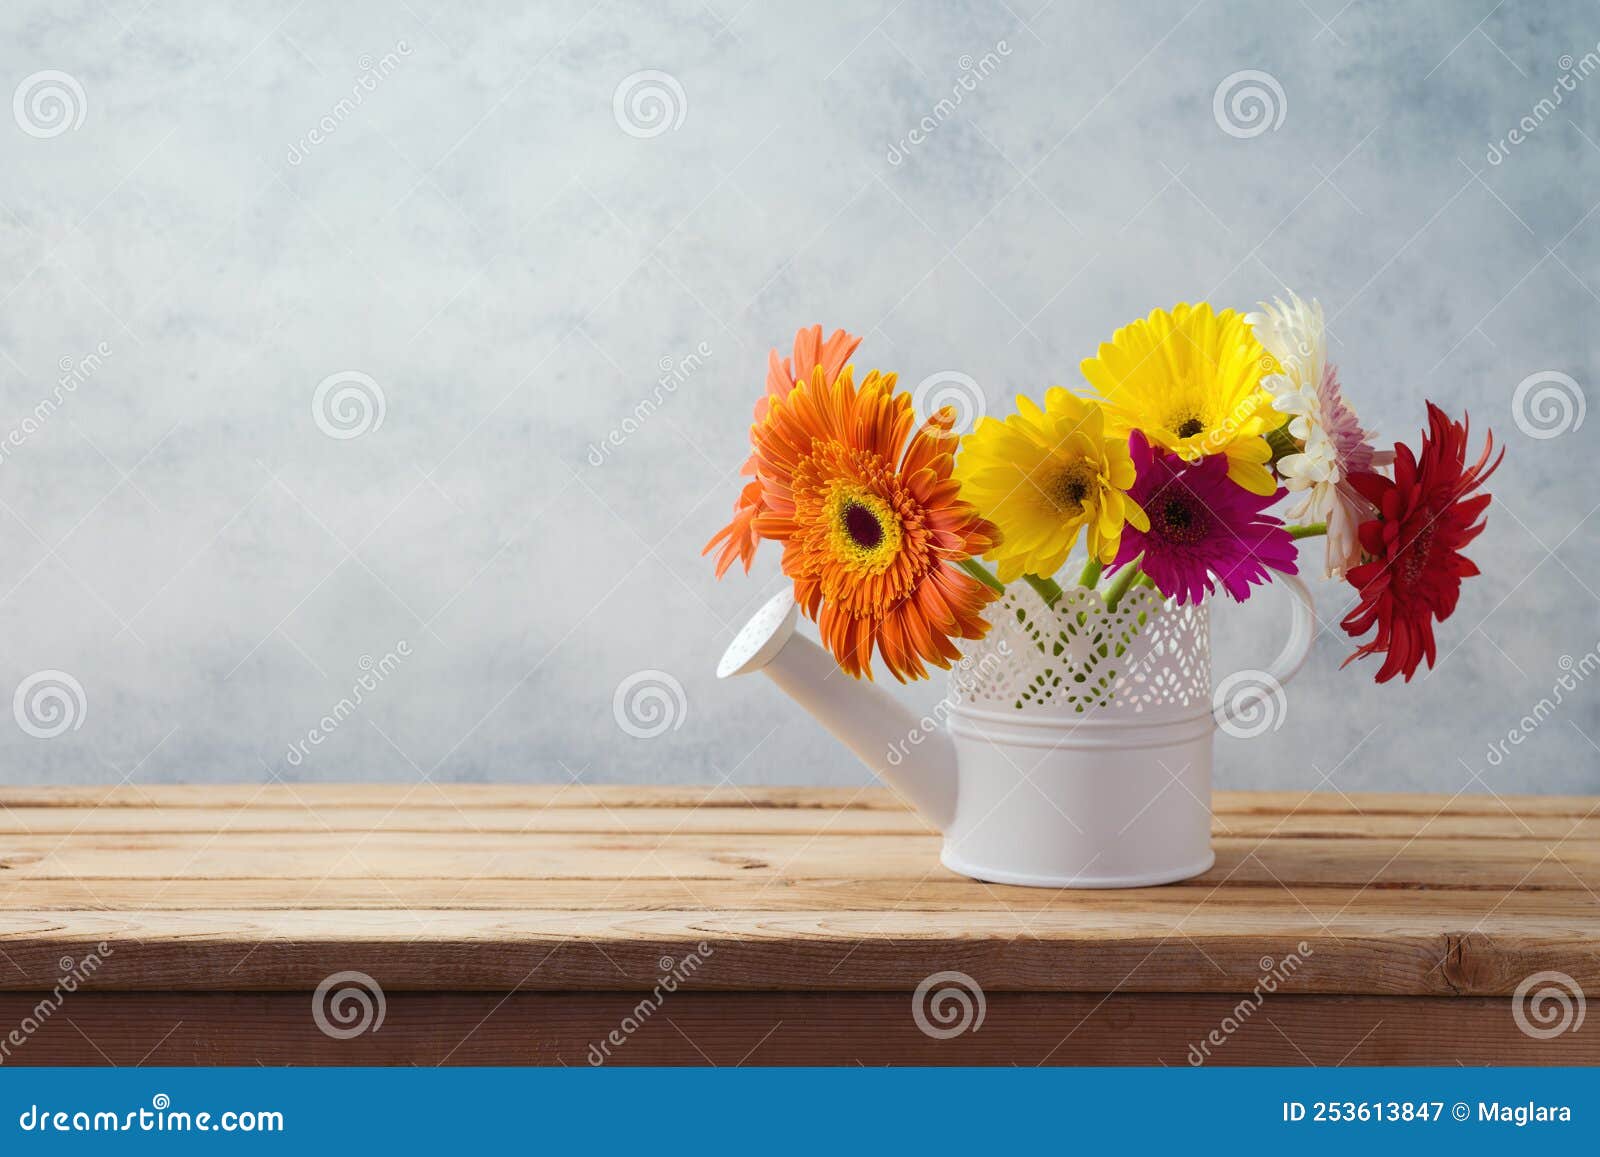 BuySend Gerbera Floral Decoration Online FNP